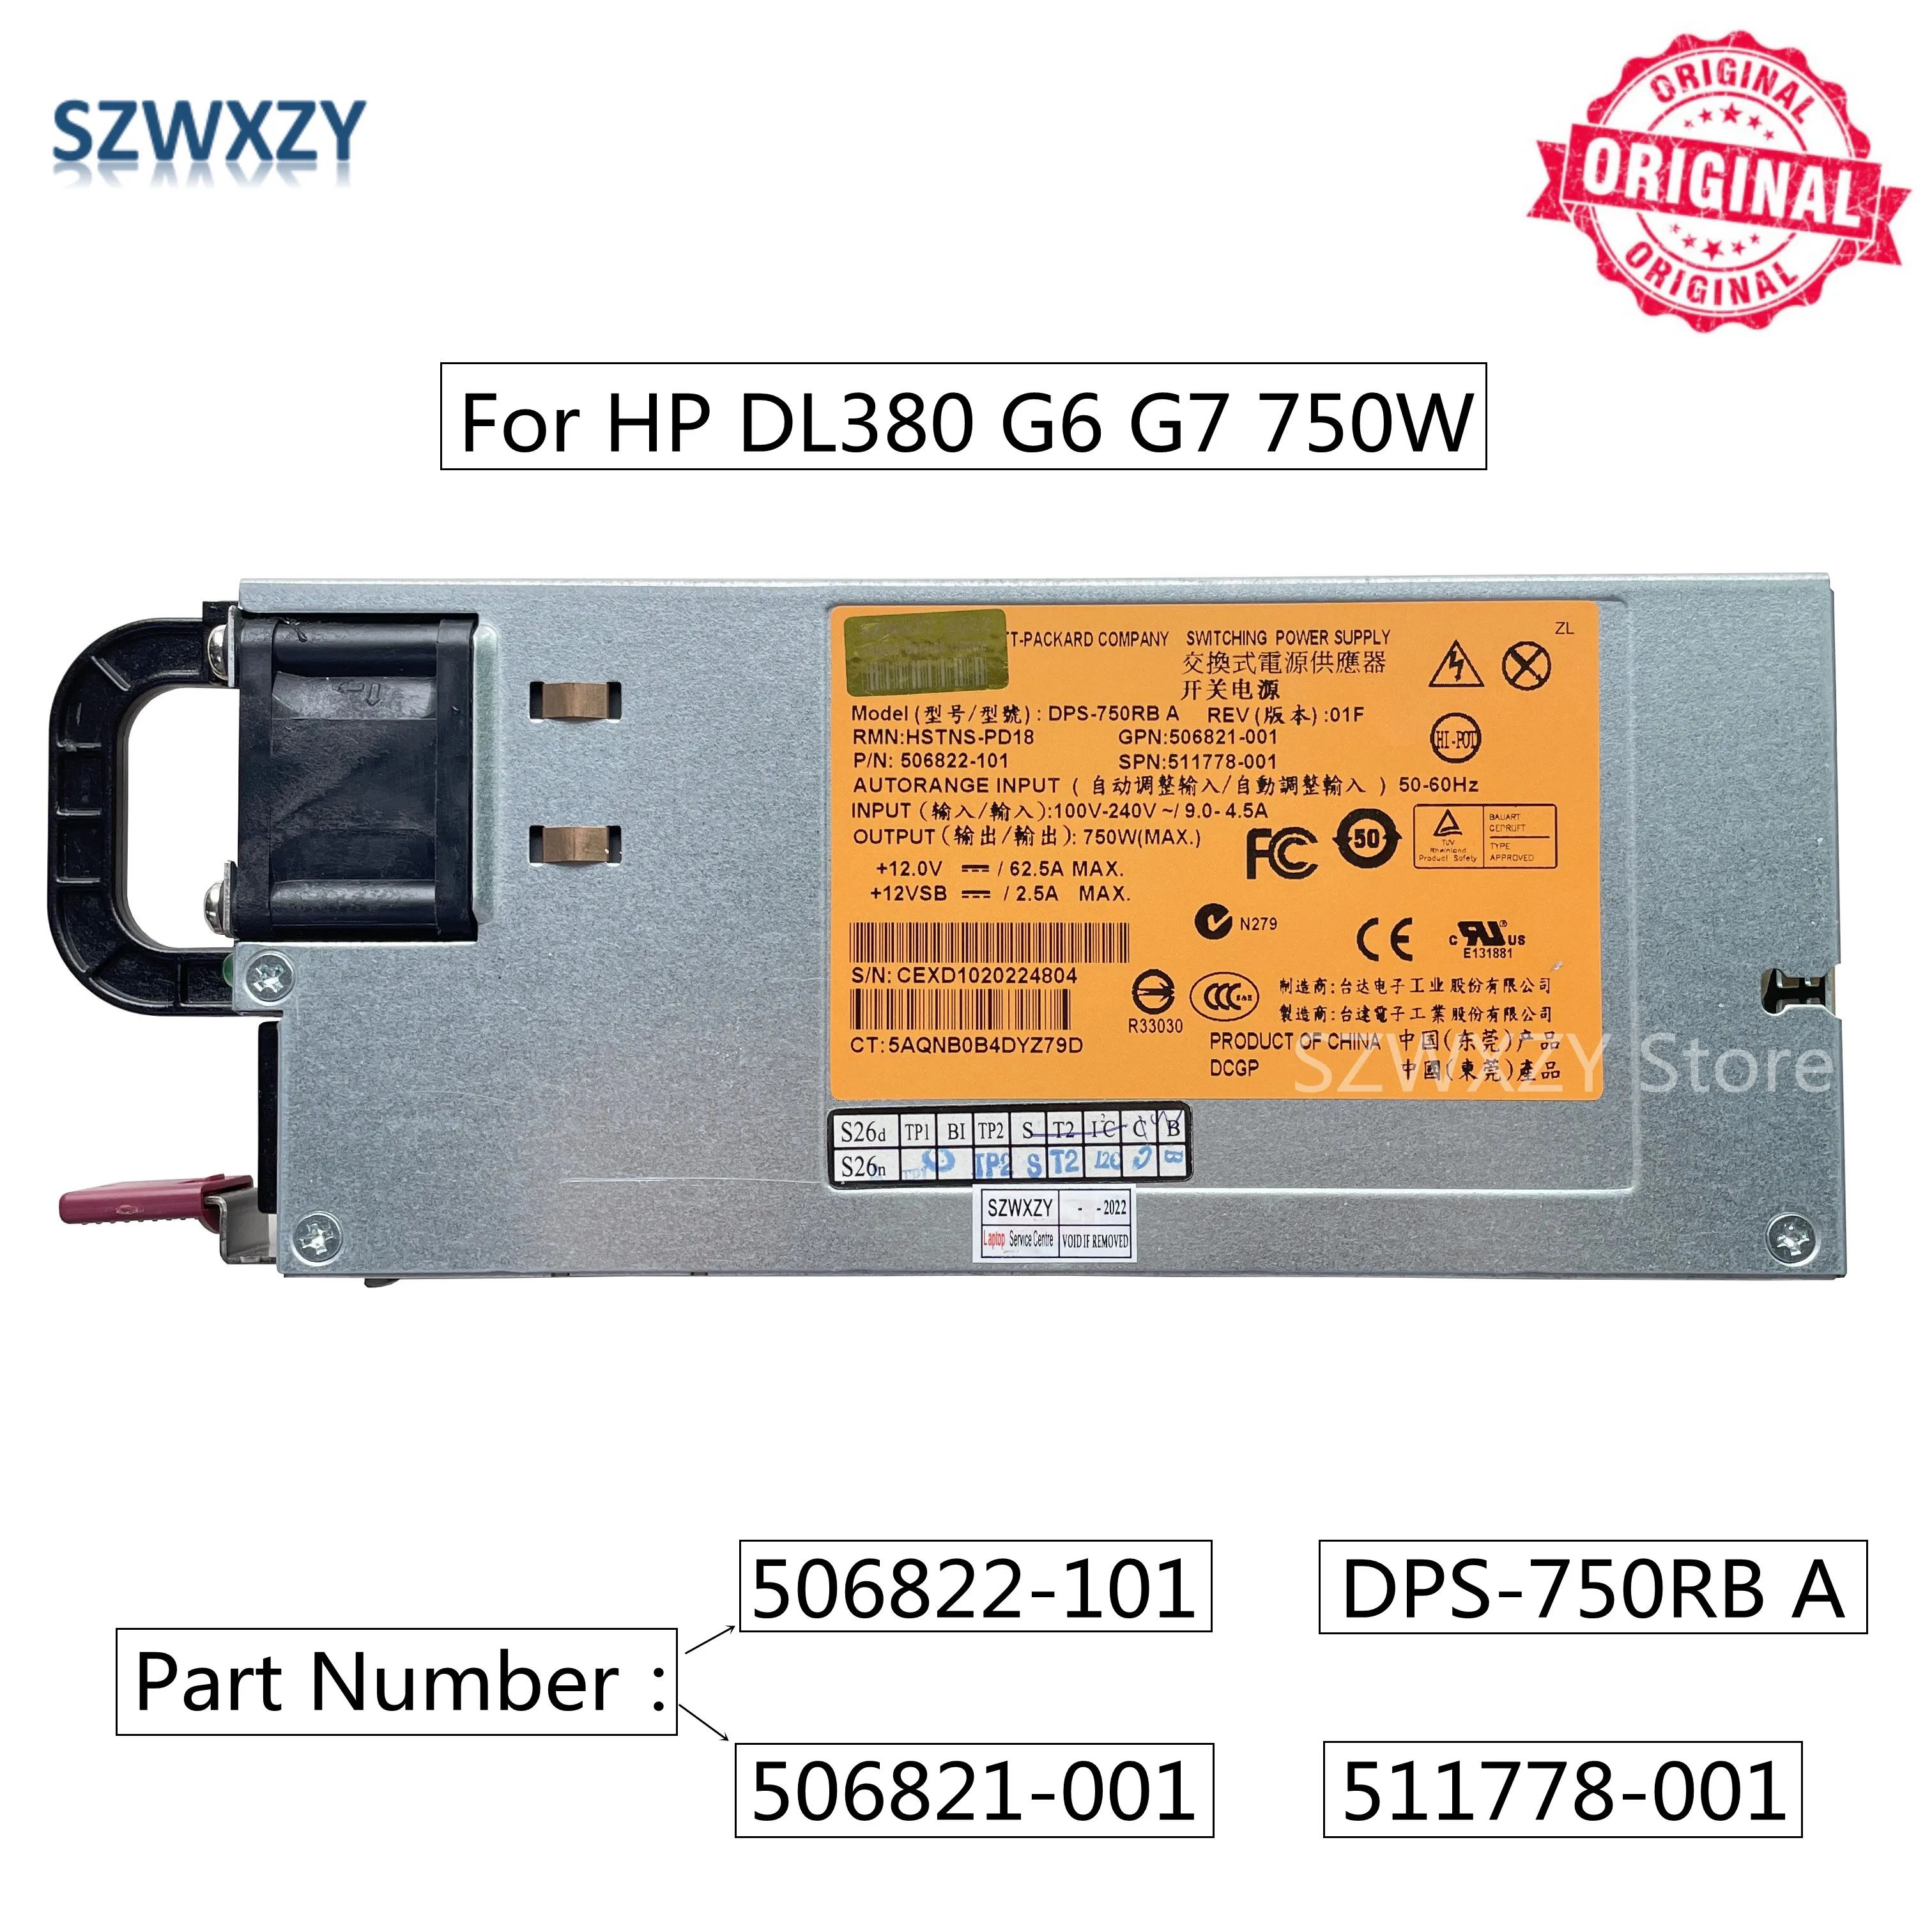 Фото SZWXZY оригинал для HP DL380 G6 G7 750 Вт серверный источник питания DPS-750RB A 506822-101 506821-001